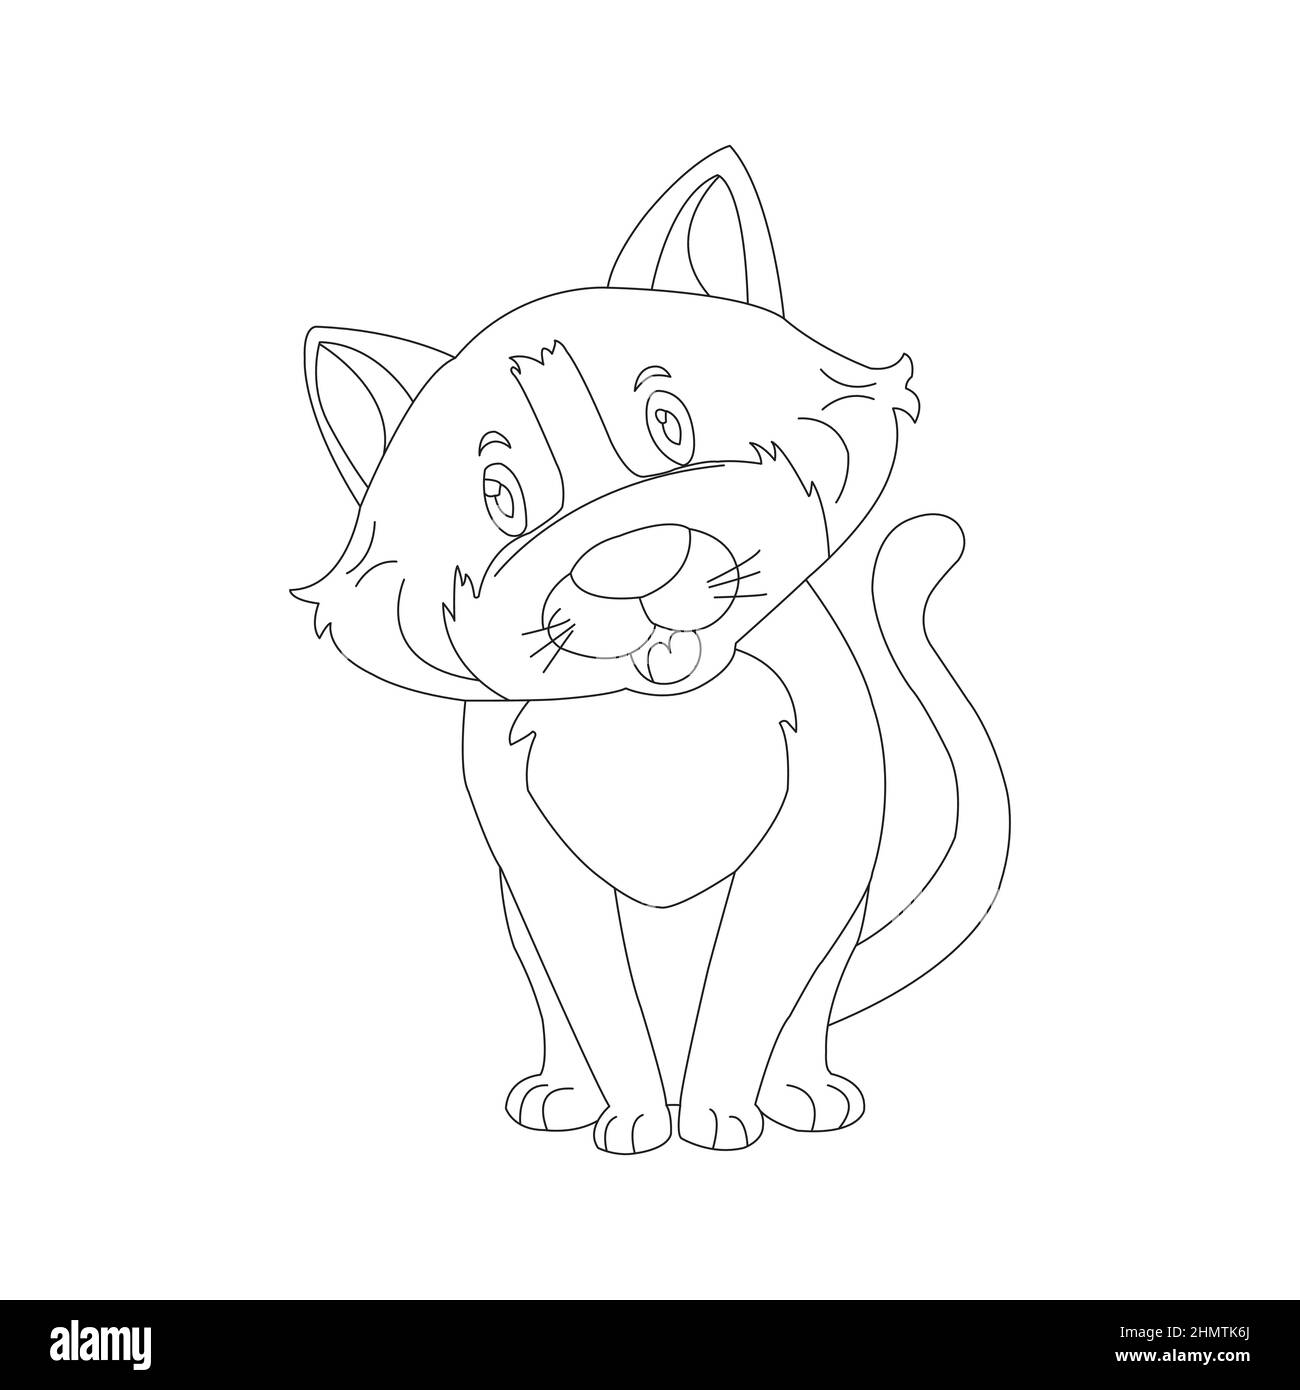 Malvorlagen Umriss von niedlichen Katze Tier Malvorlagen Cartoon Vektor Illustration Stock Vektor